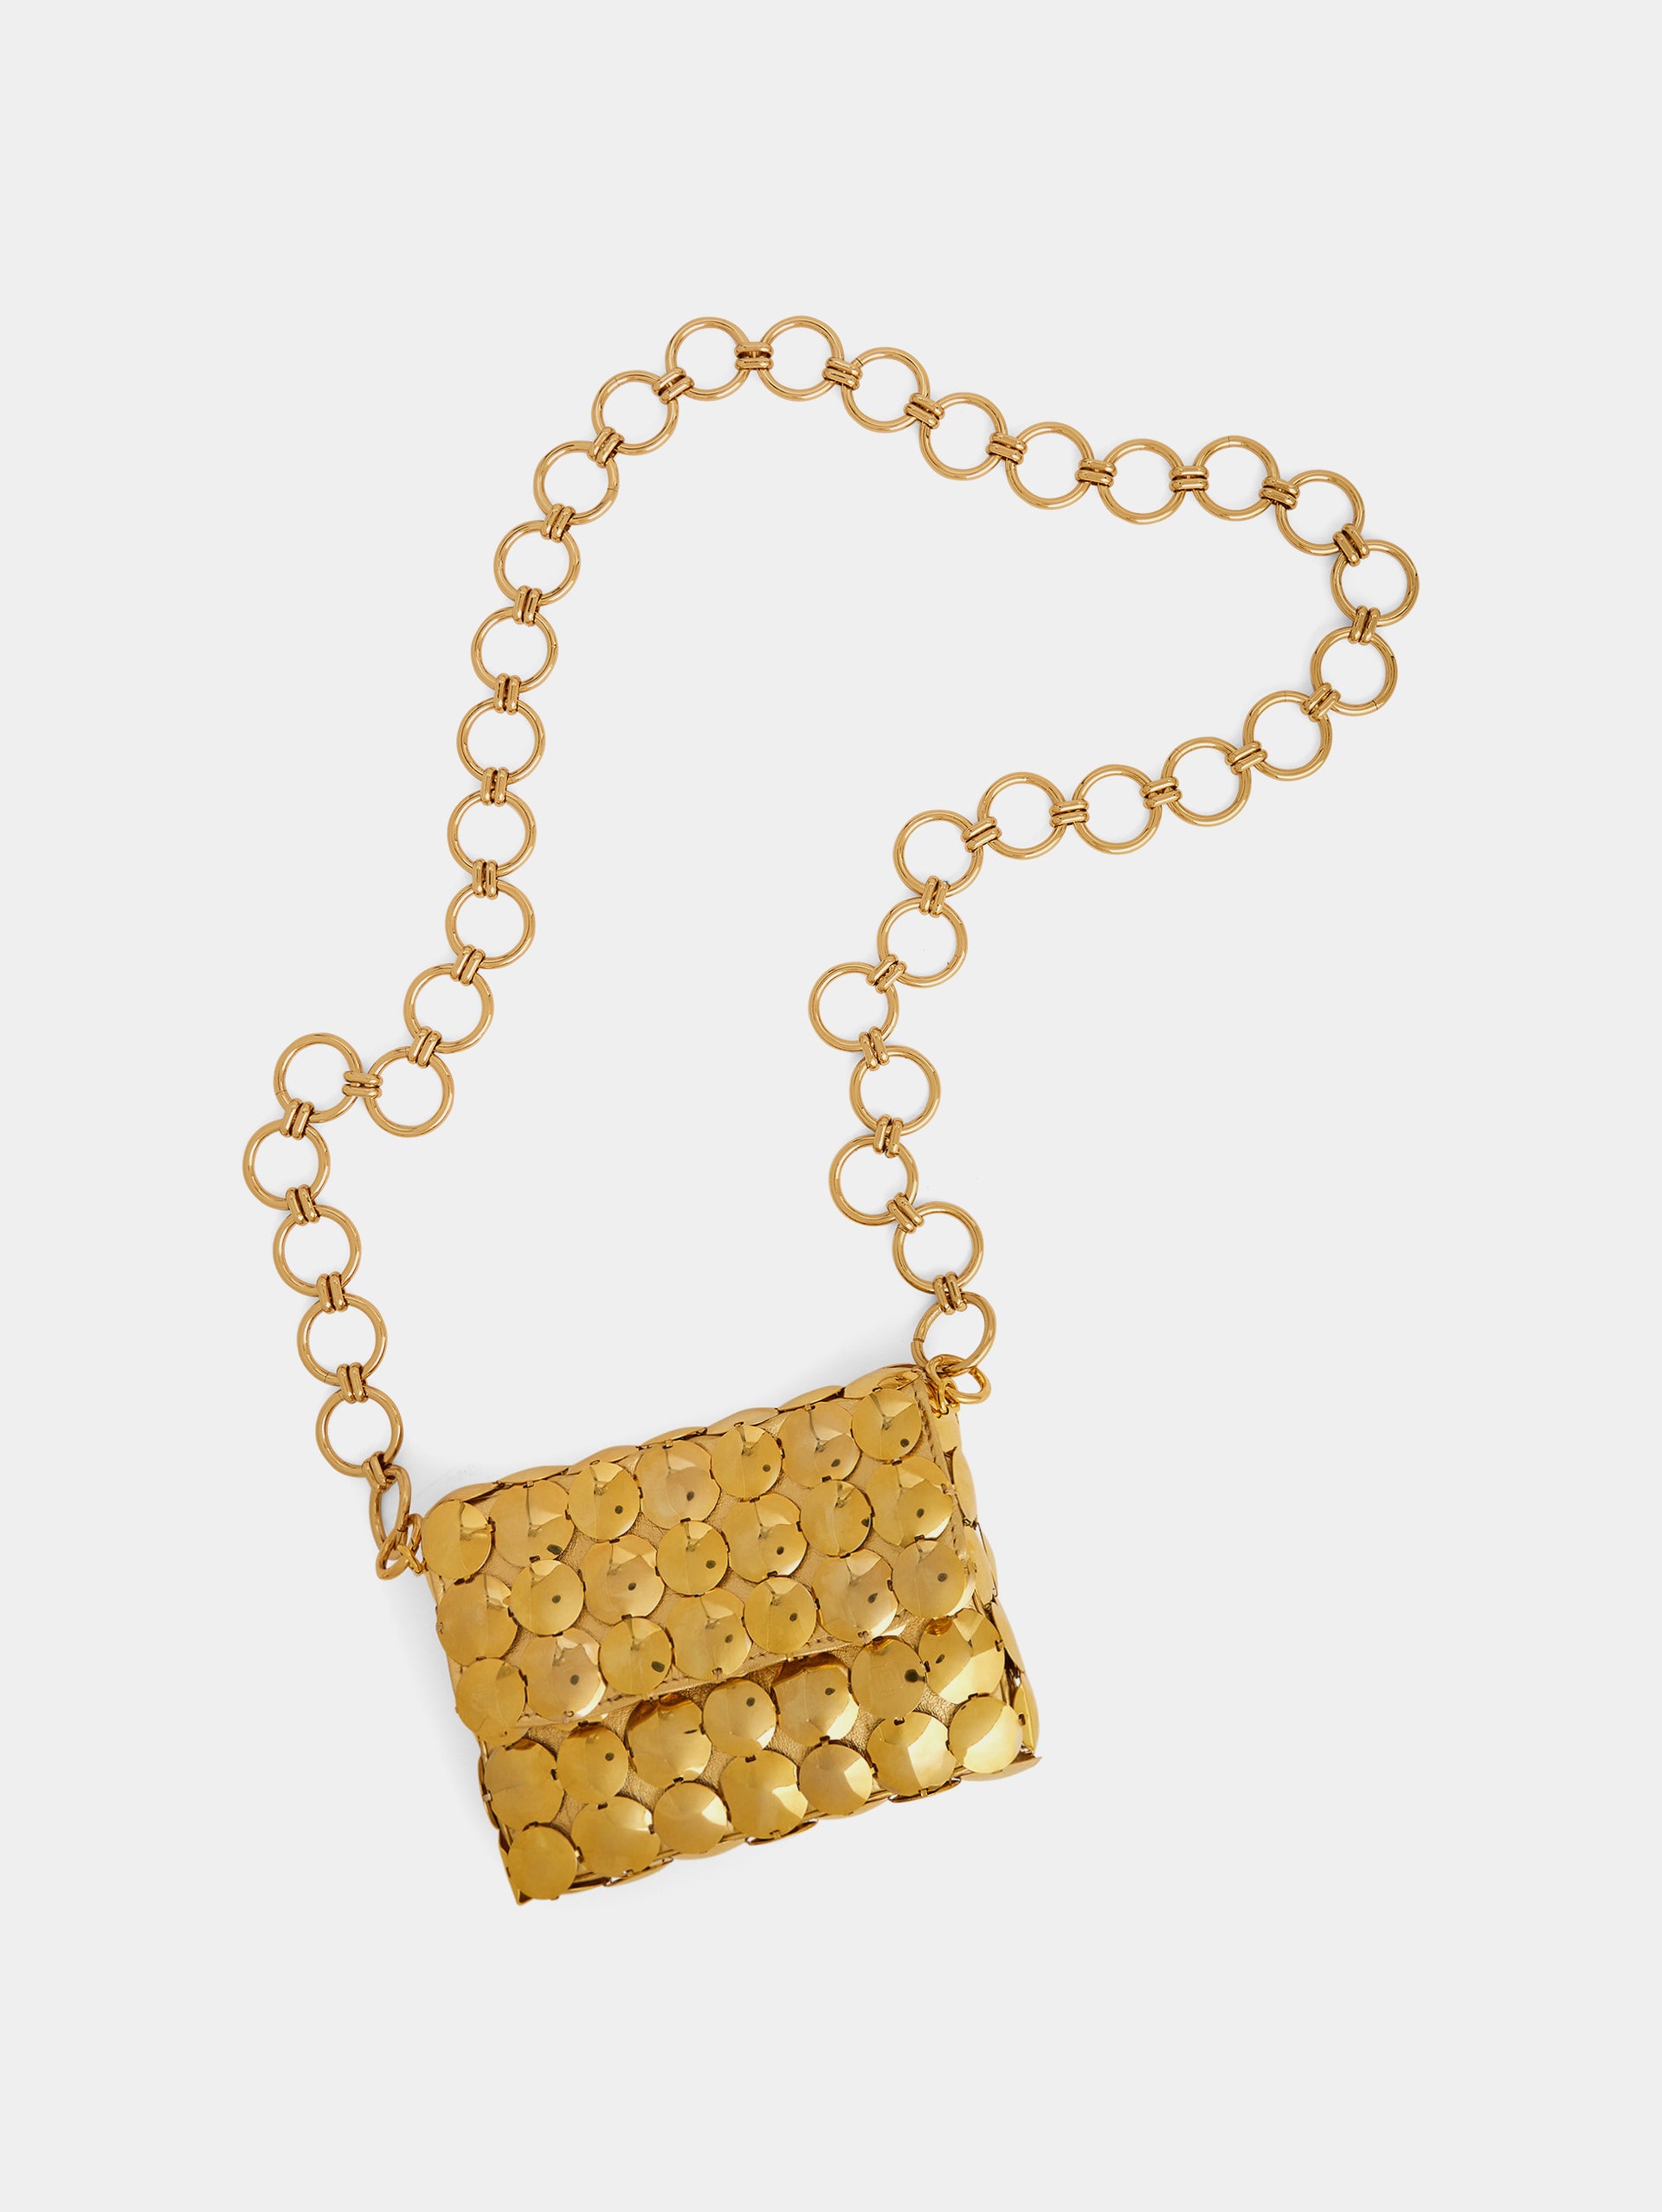 Metallic gold bag in aluminum